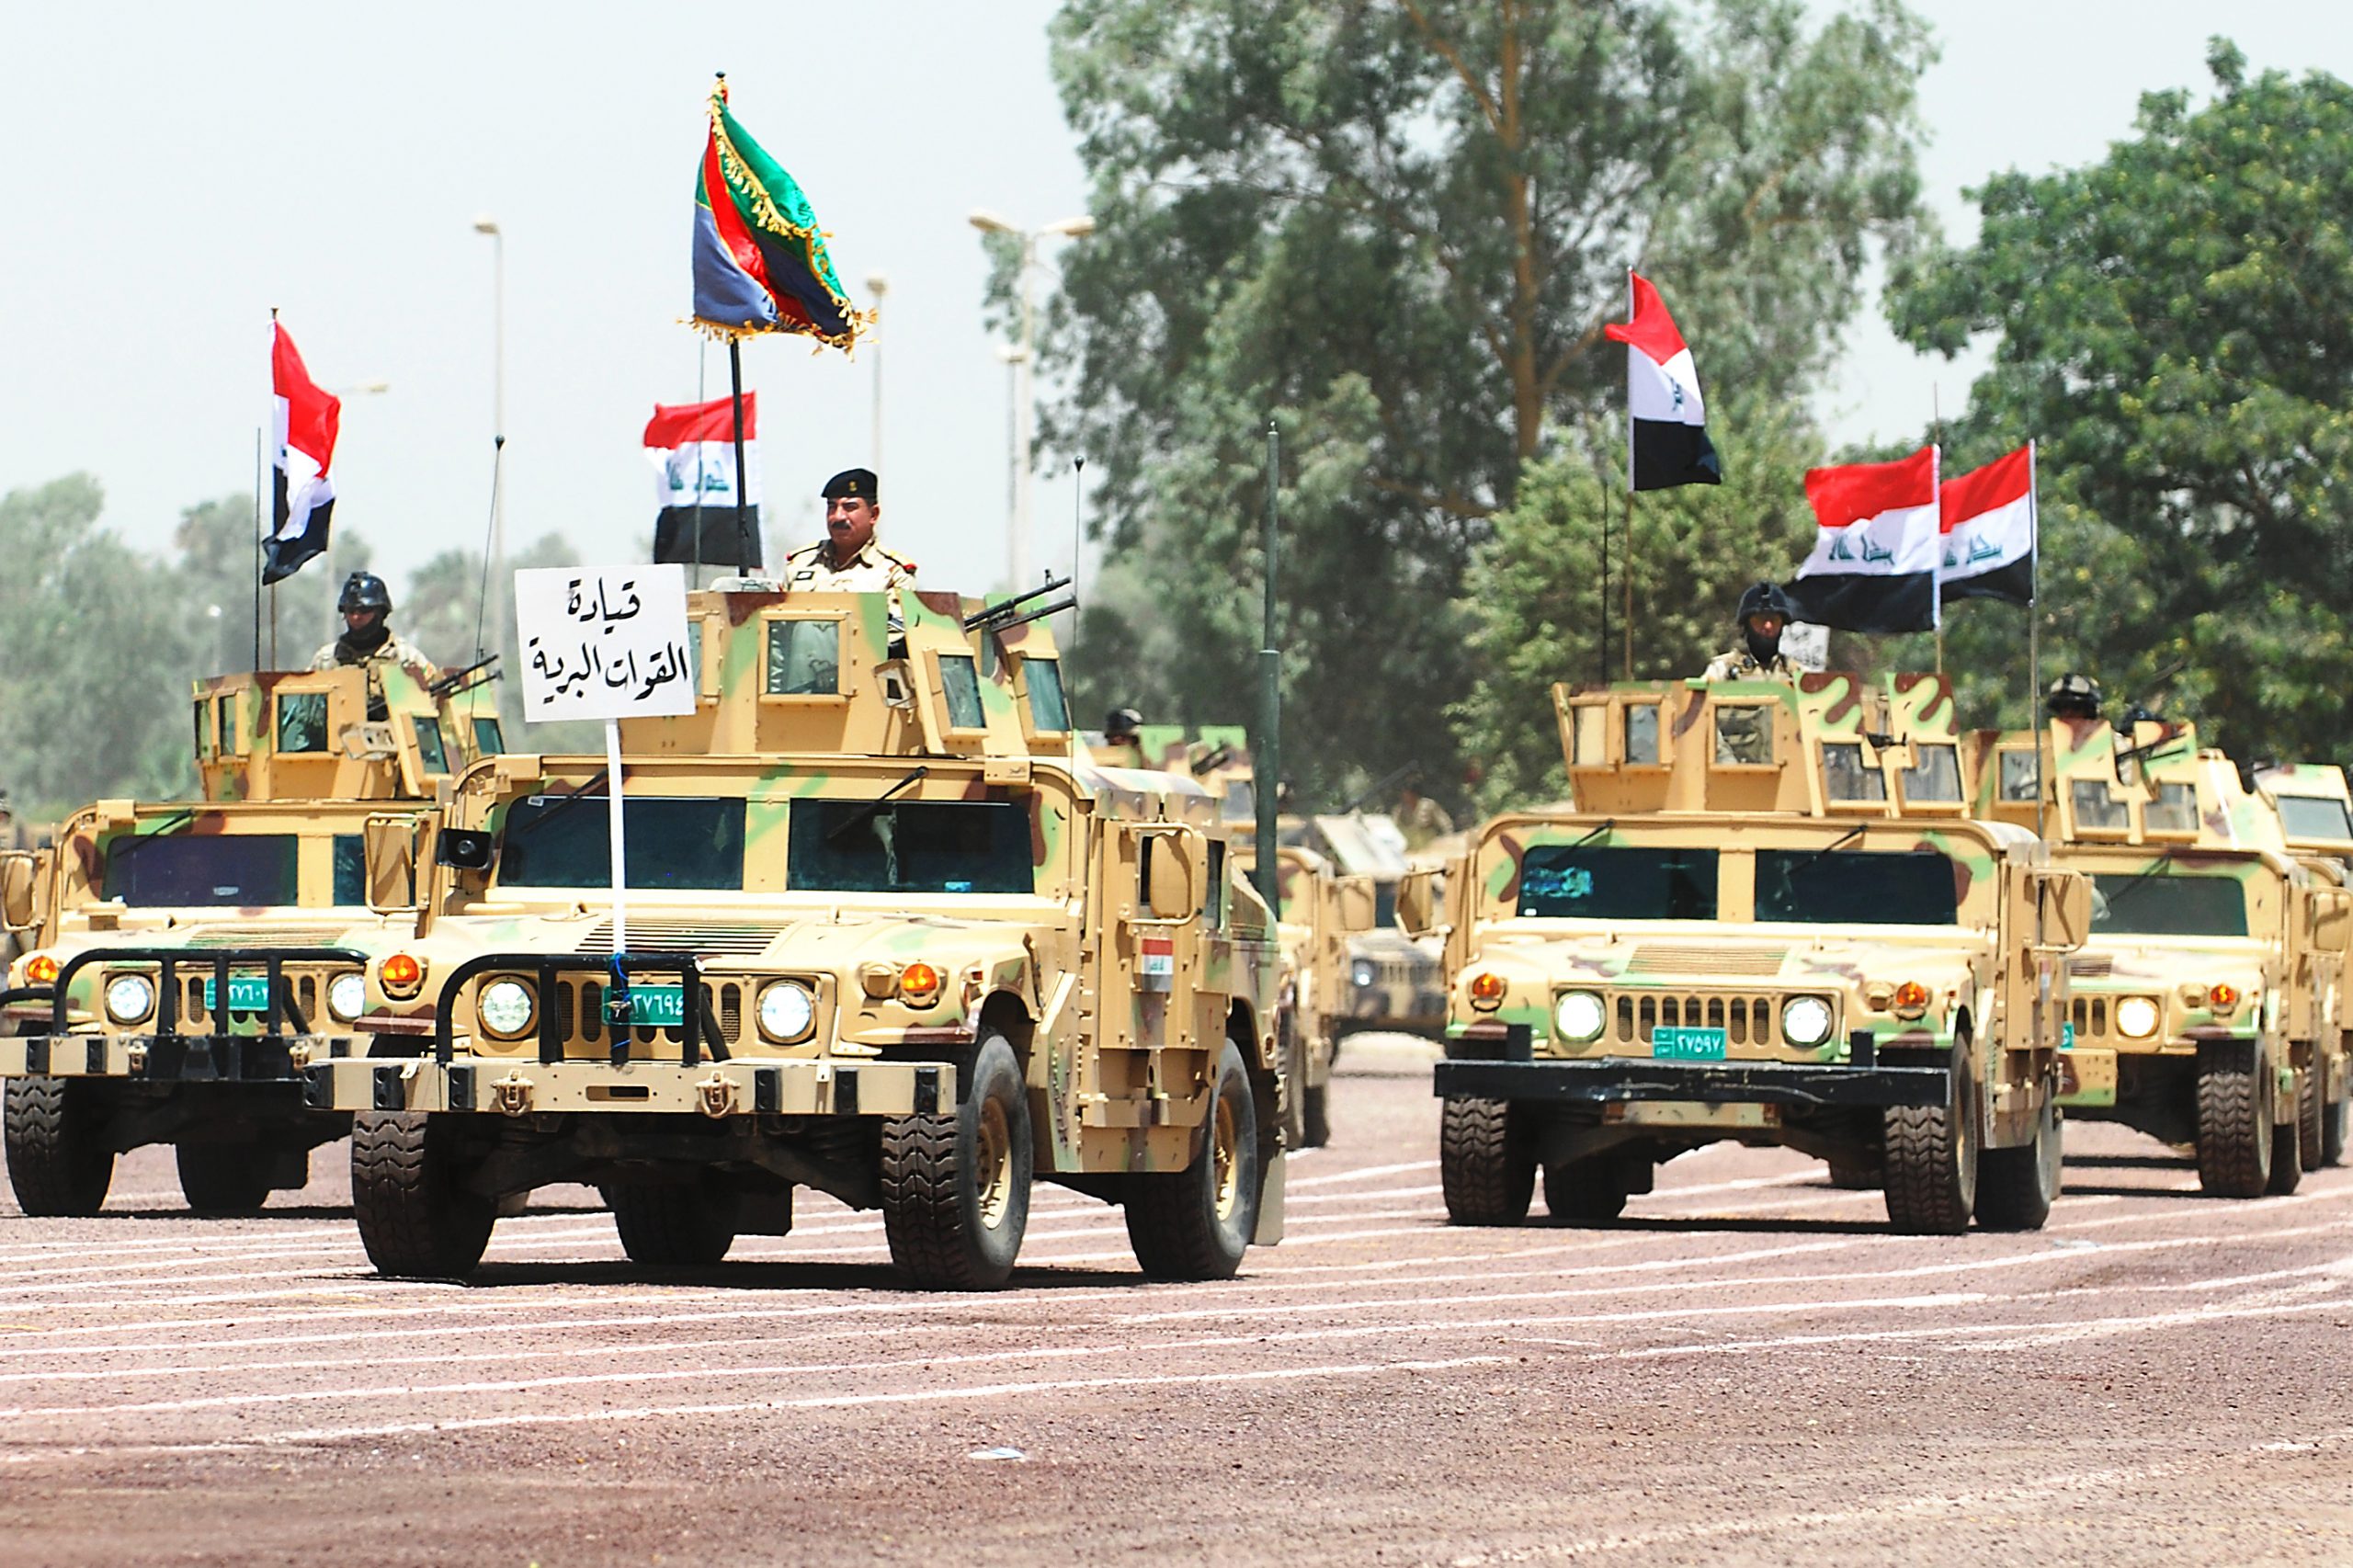   القوات المسلحة العراقية تعلن مقتل 42 داعشيا